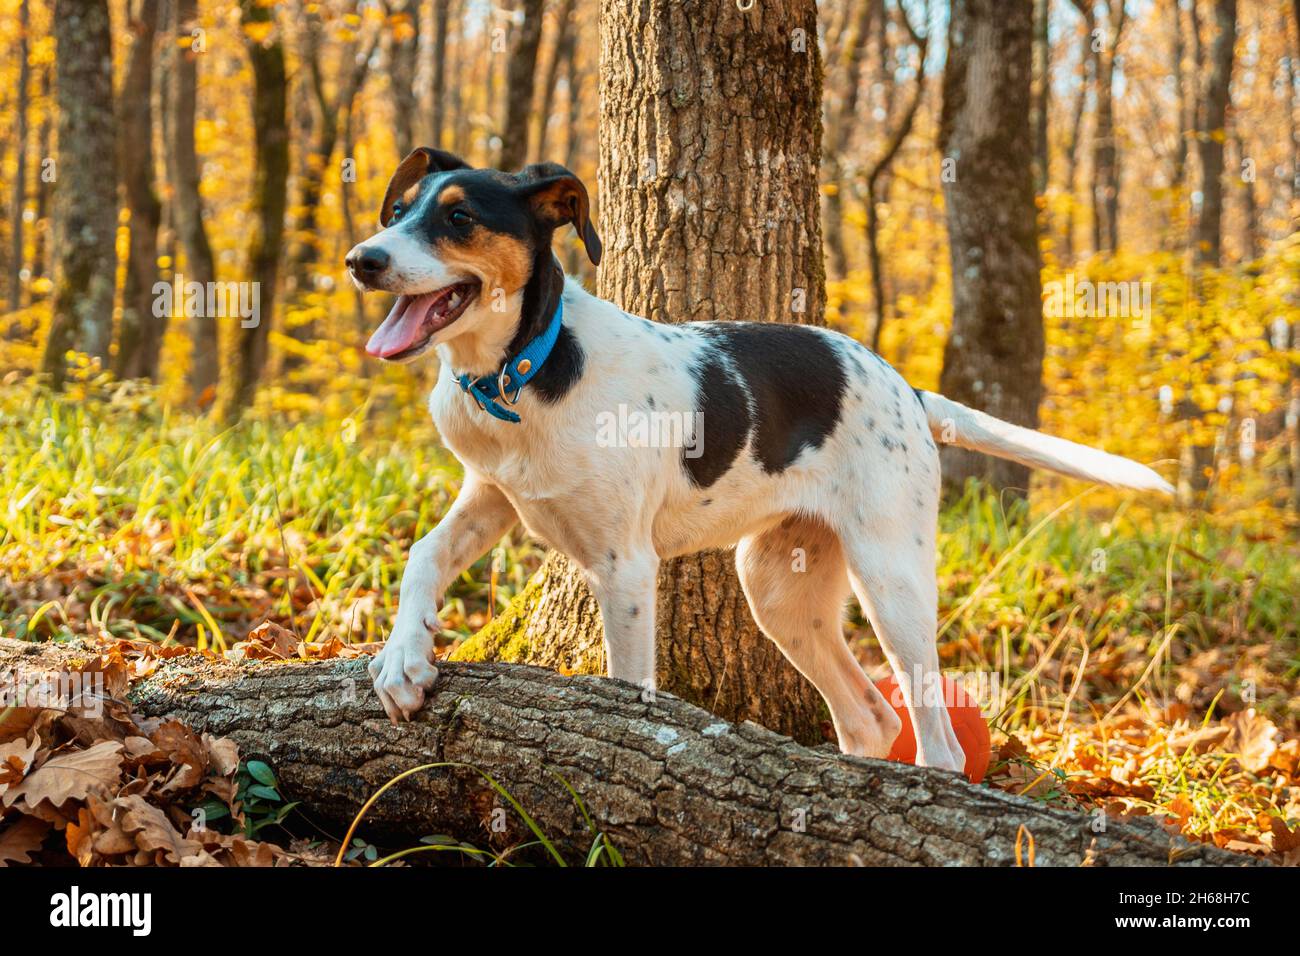 perro jugando con un palo en el parque, perro blanco con manchas negras con  un palo entre sus patas , perro tumbado en el césped con su juguete Photos